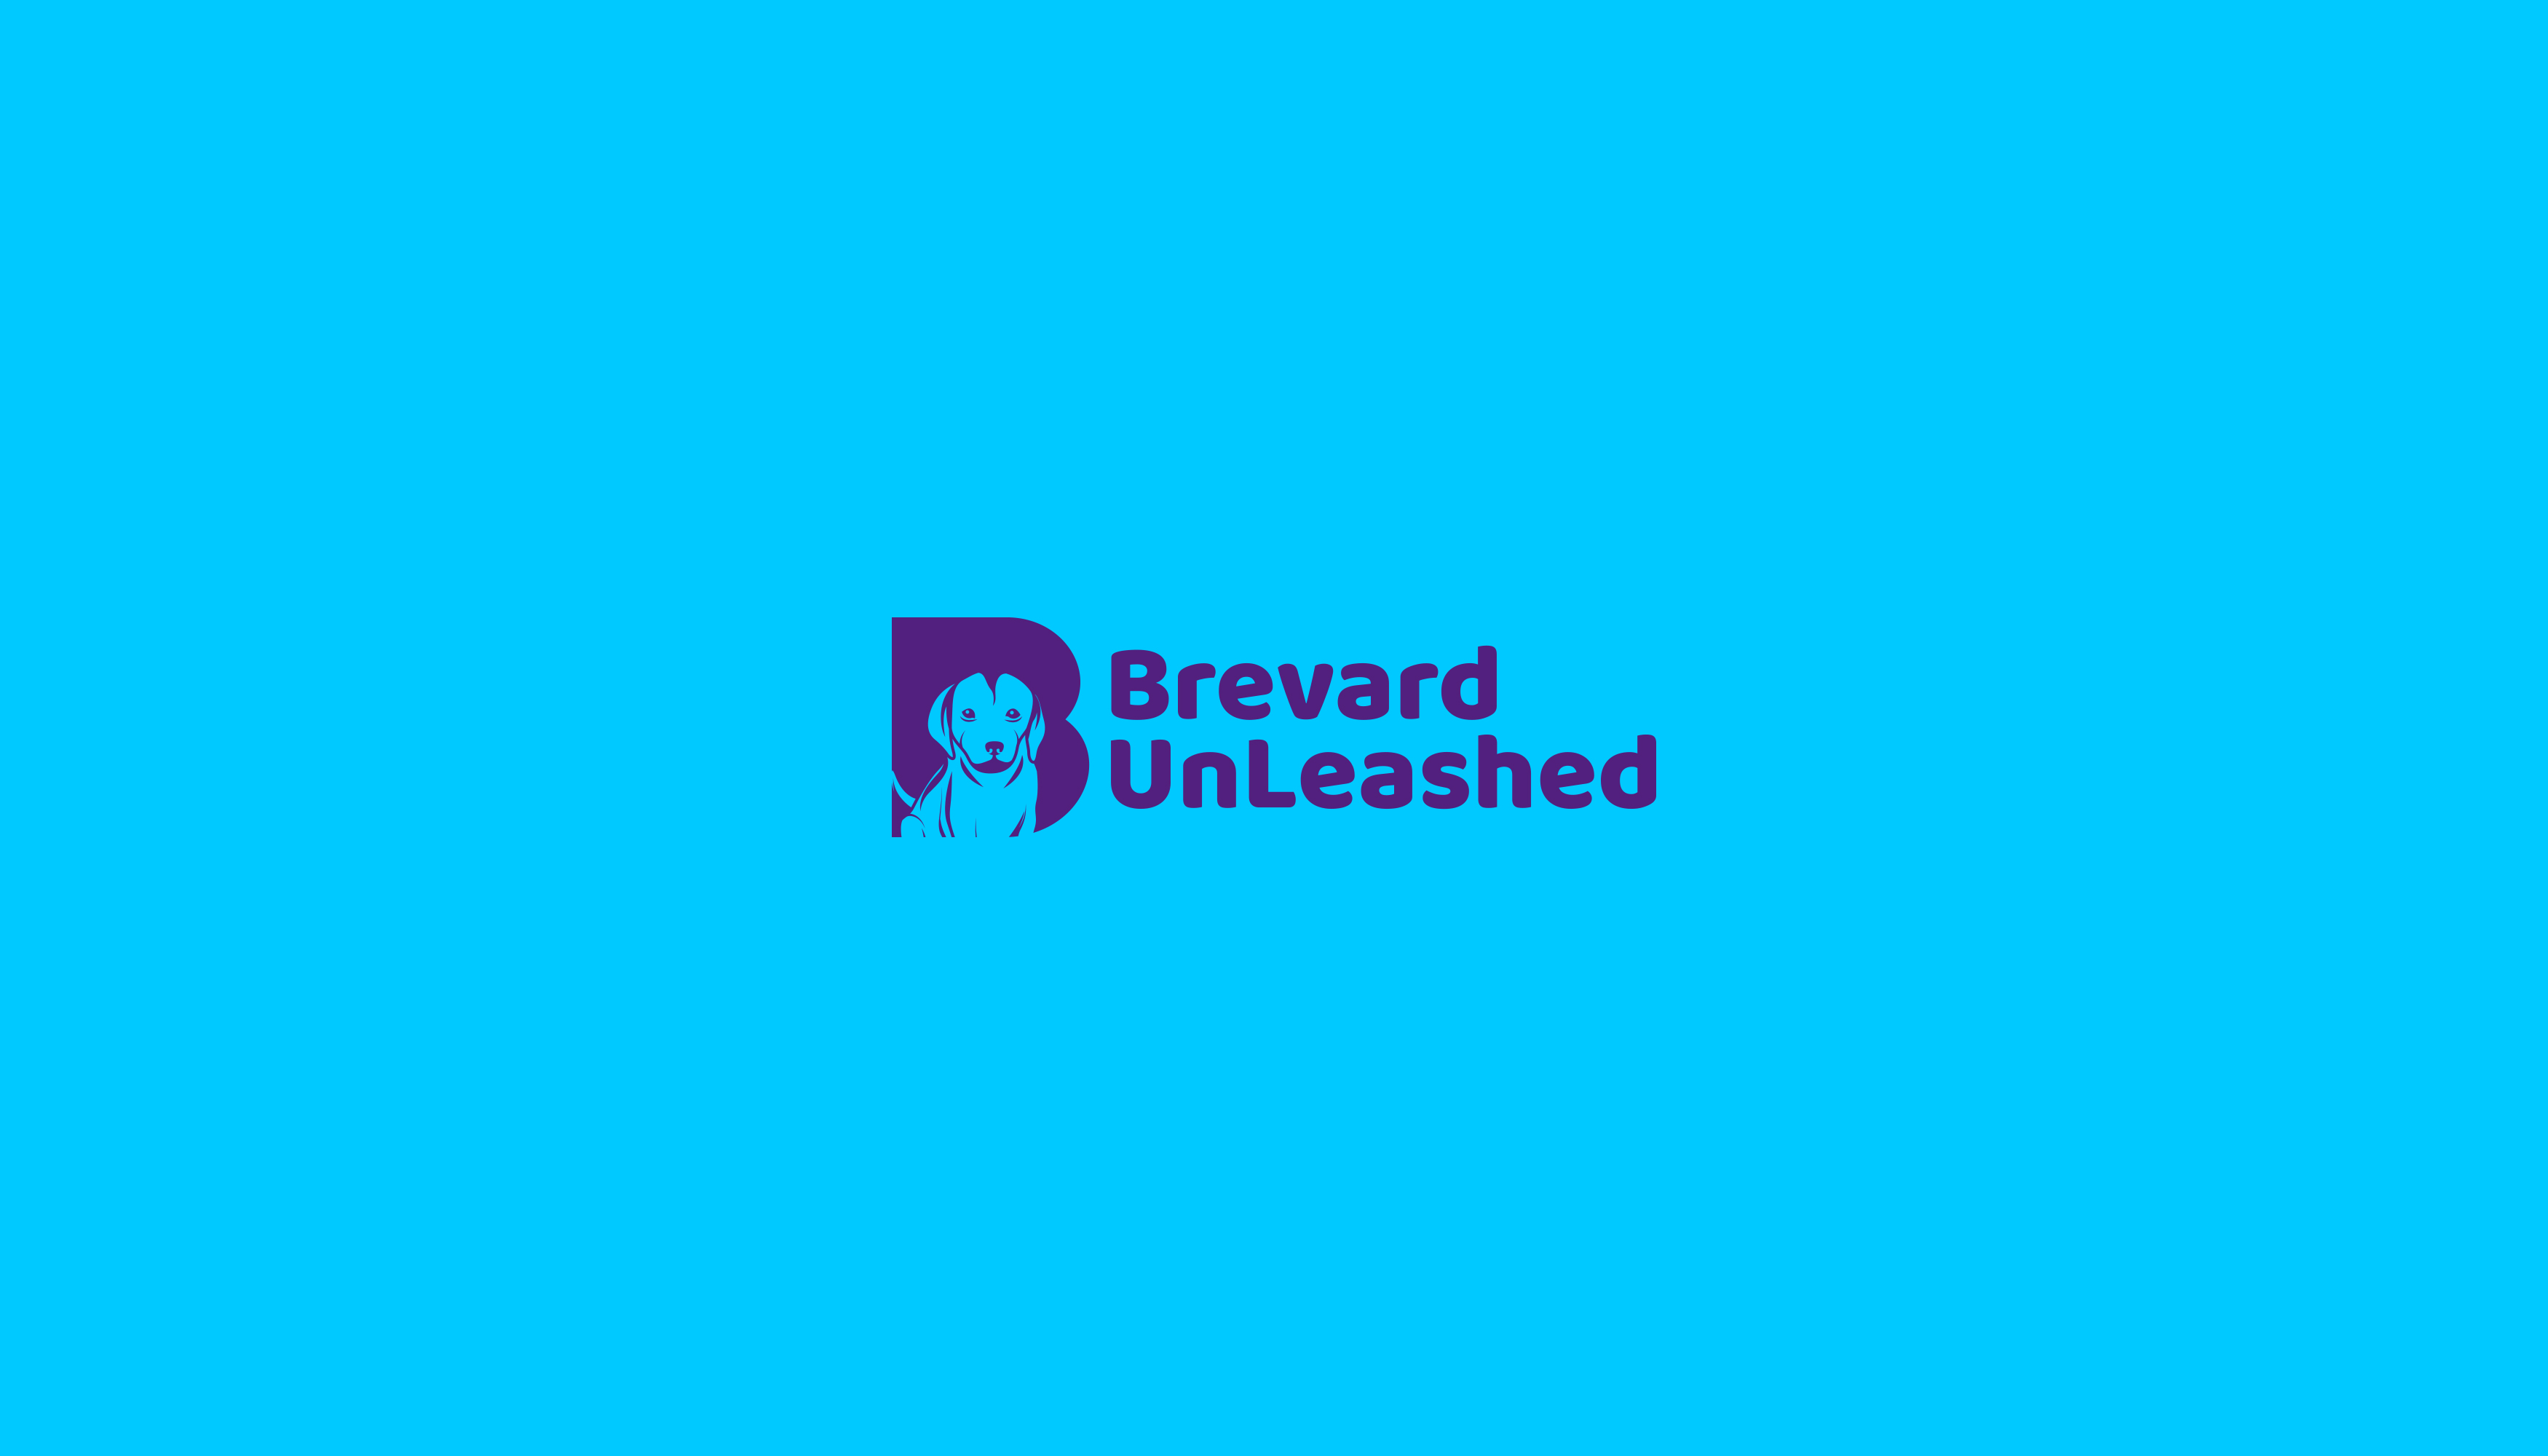 Brevard Unleashed Design #3